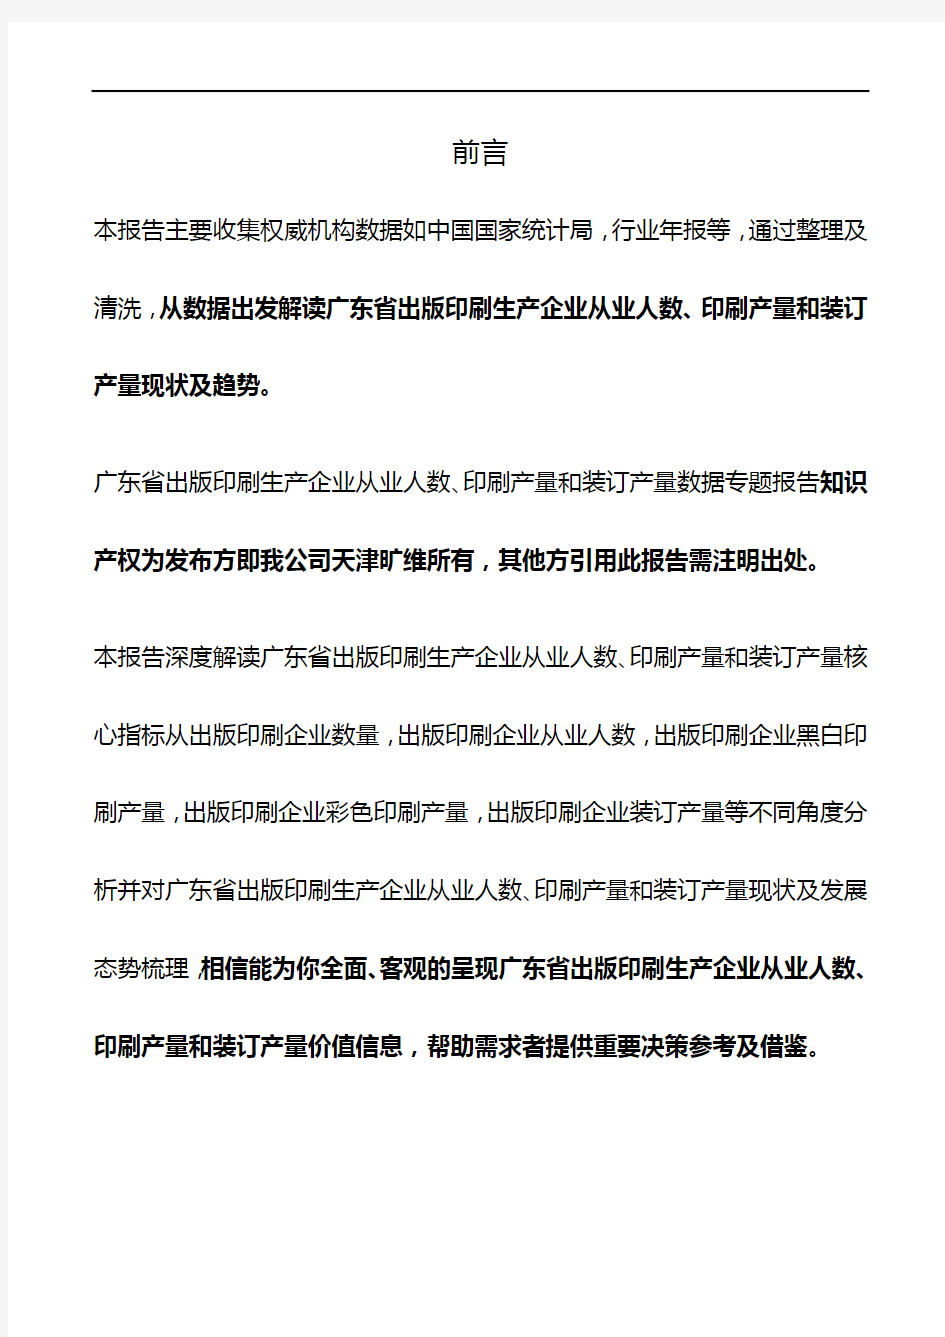 广东省出版印刷生产企业从业人数、印刷产量和装订产量3年数据专题报告2019版